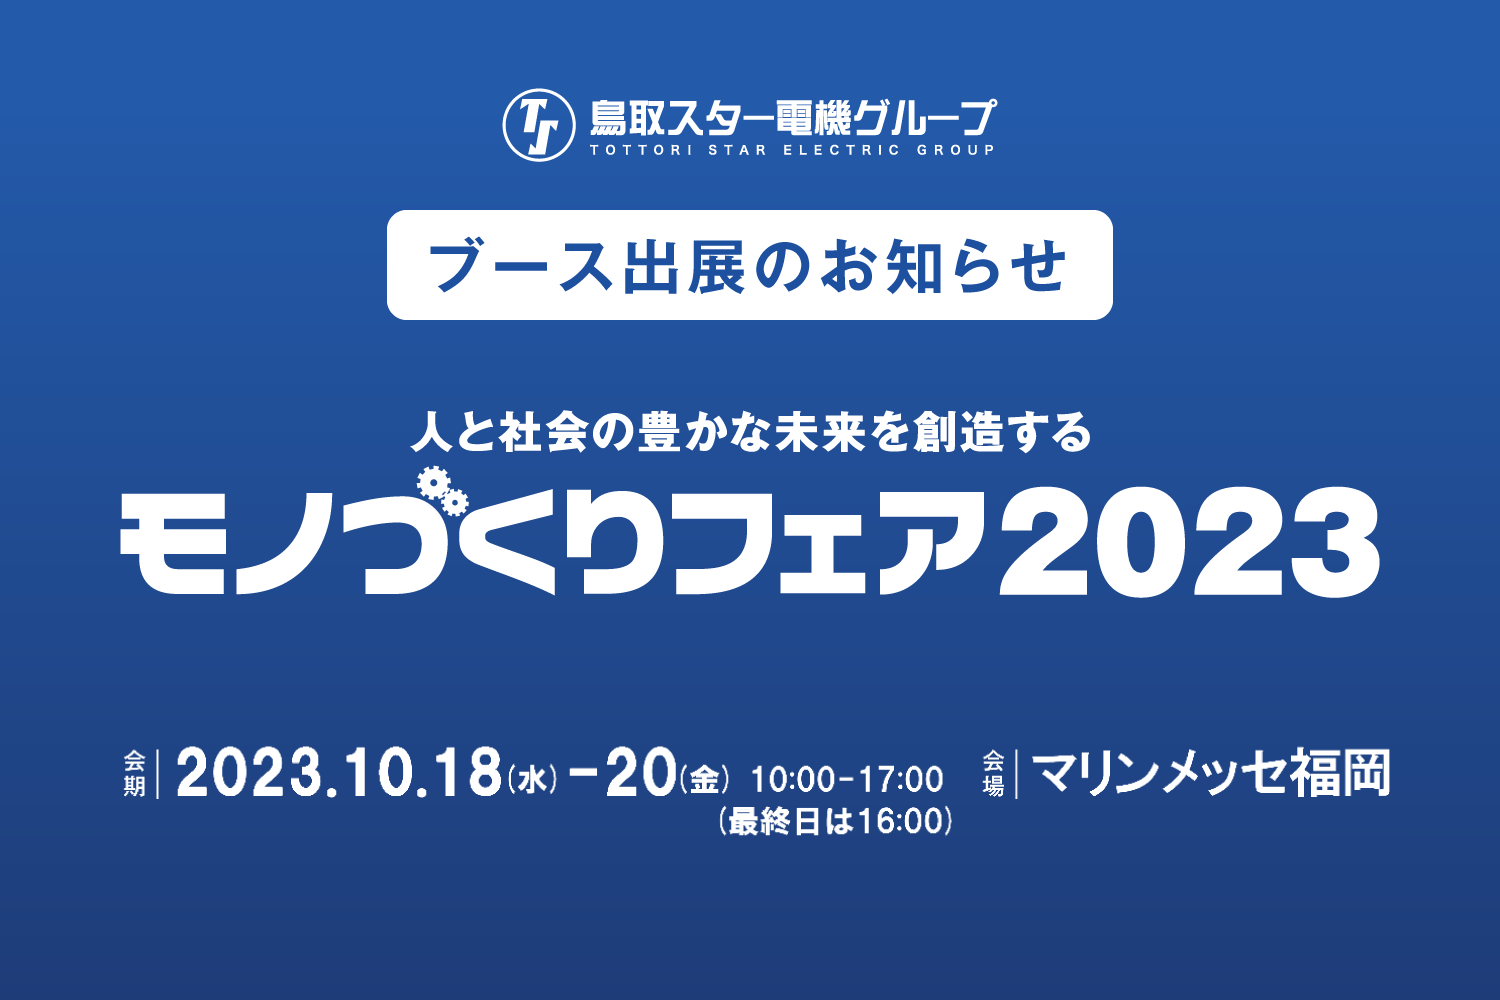 マリンメッセ福岡で開催される「モノづくりフェア 2023」に出展いたします。